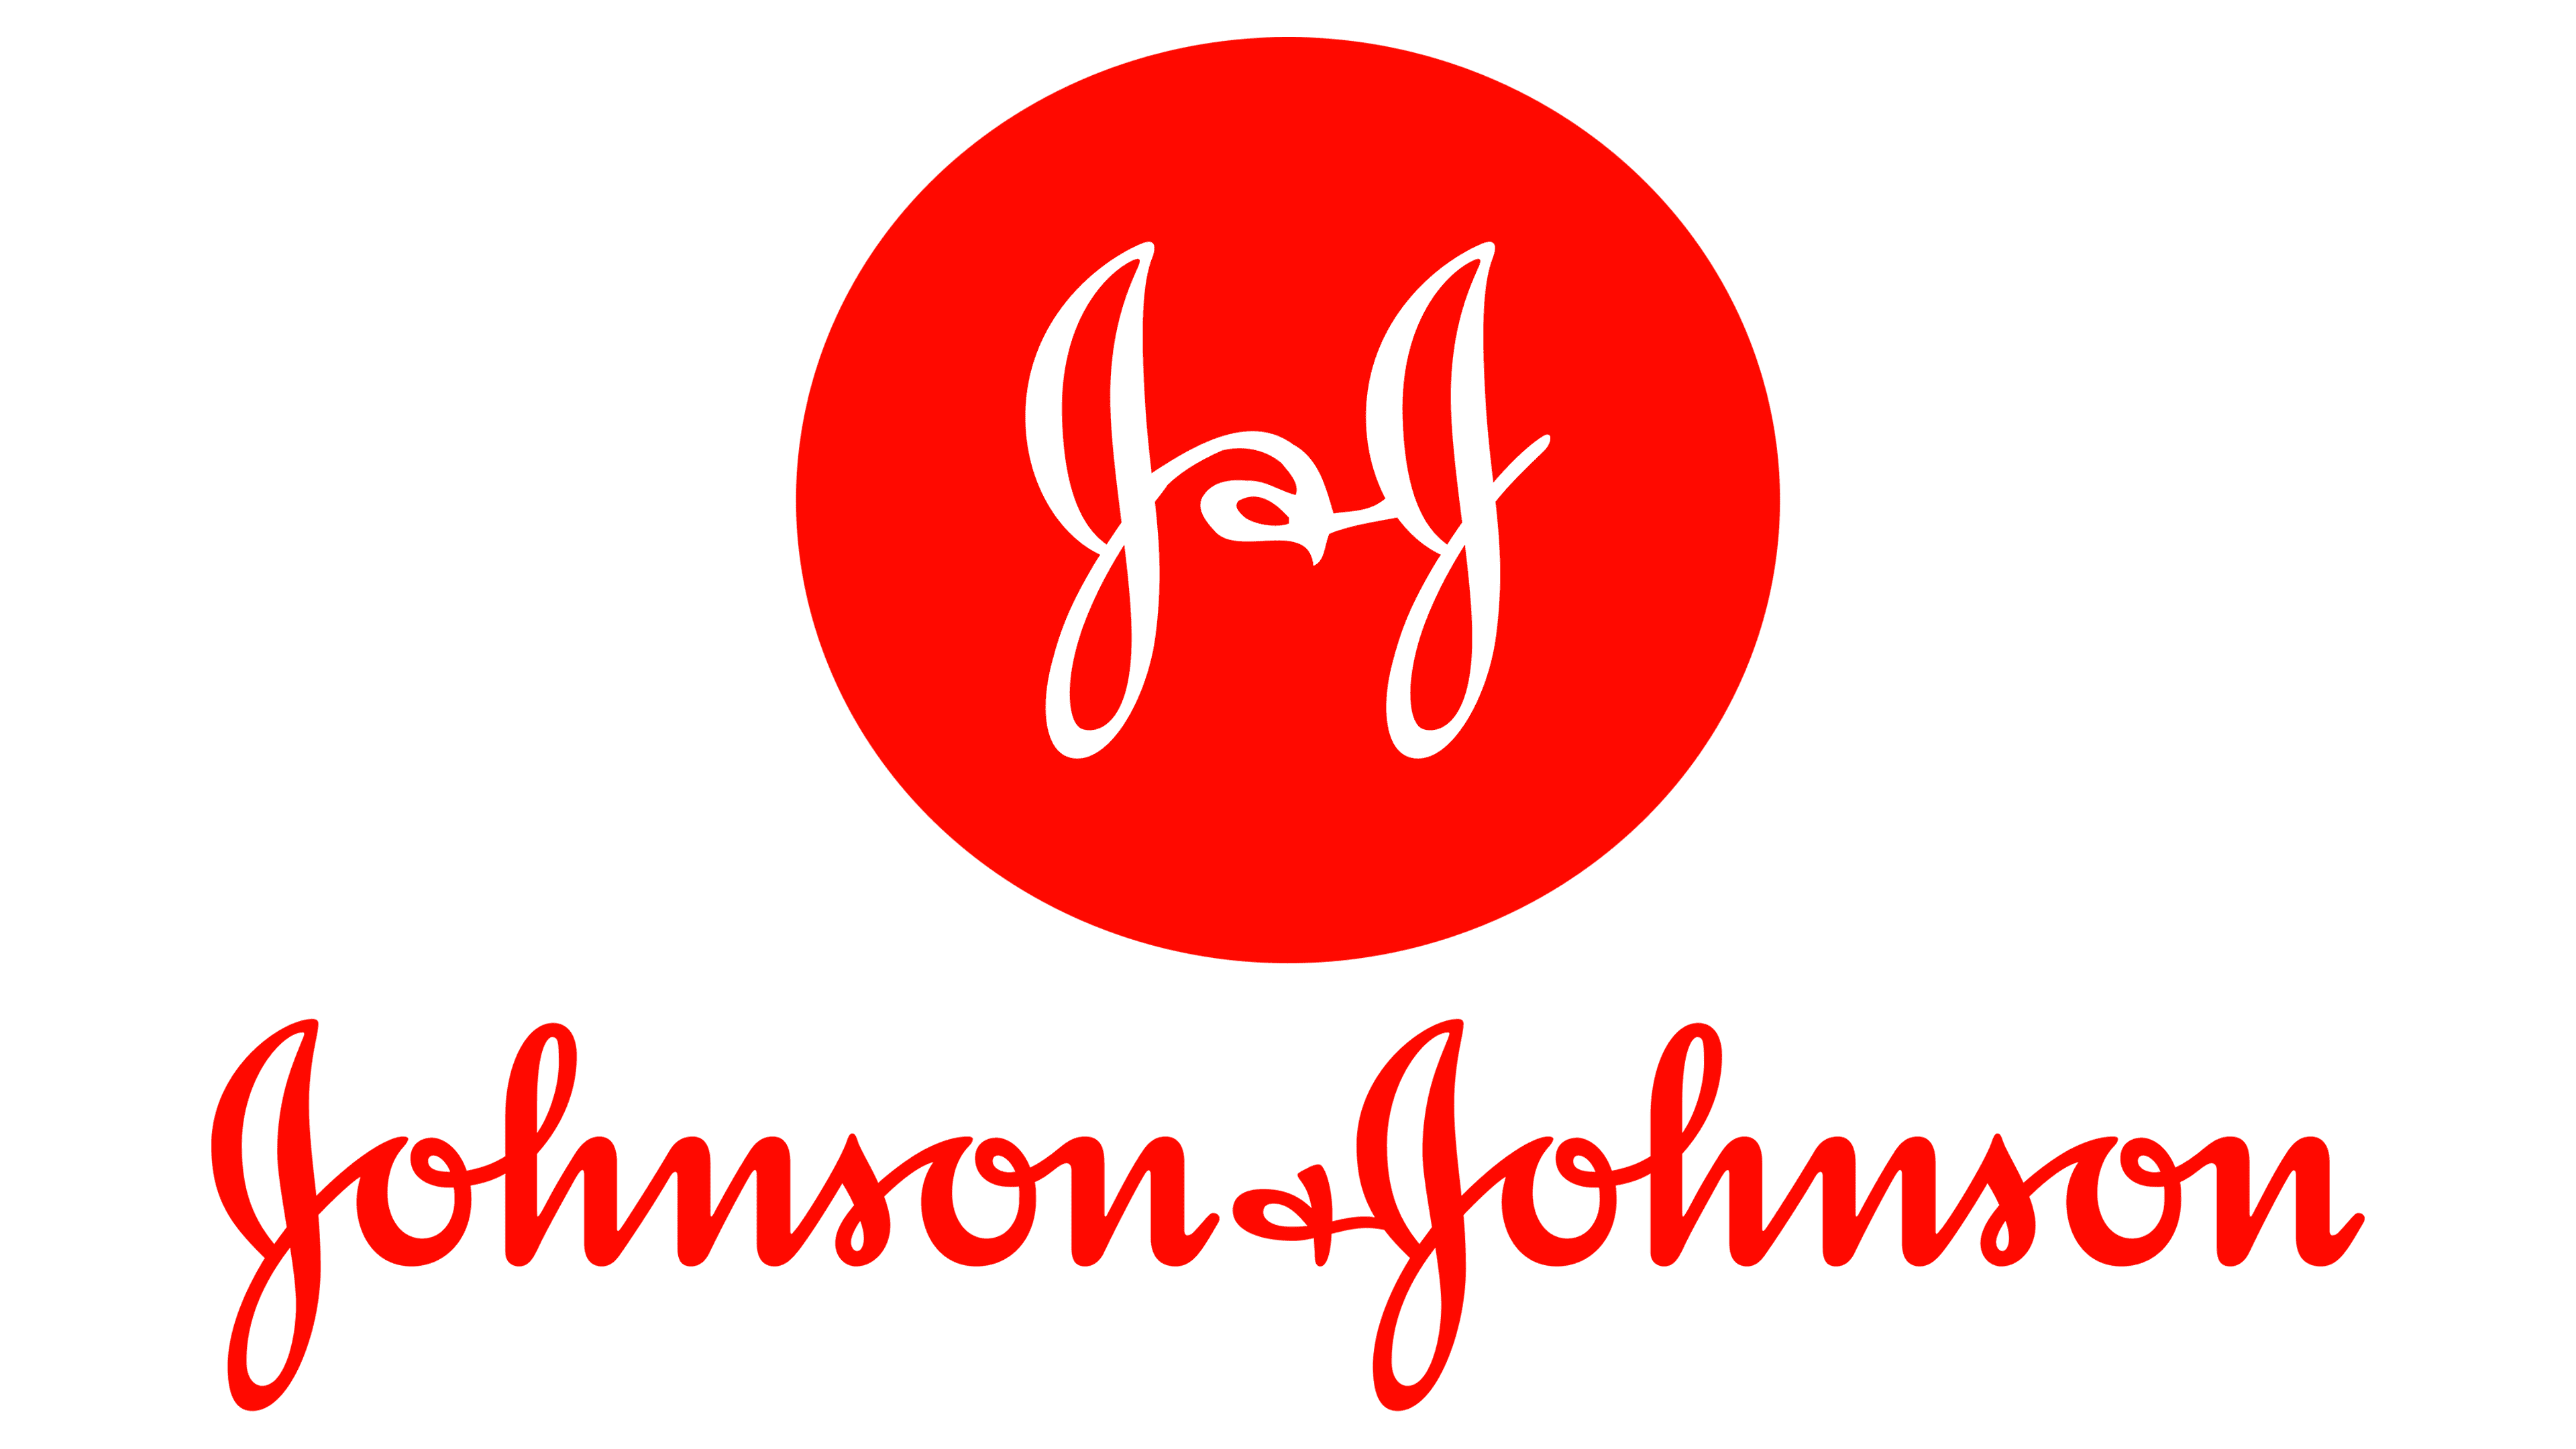 Johnson & Johnson Logo histoire, signification de l'emblème